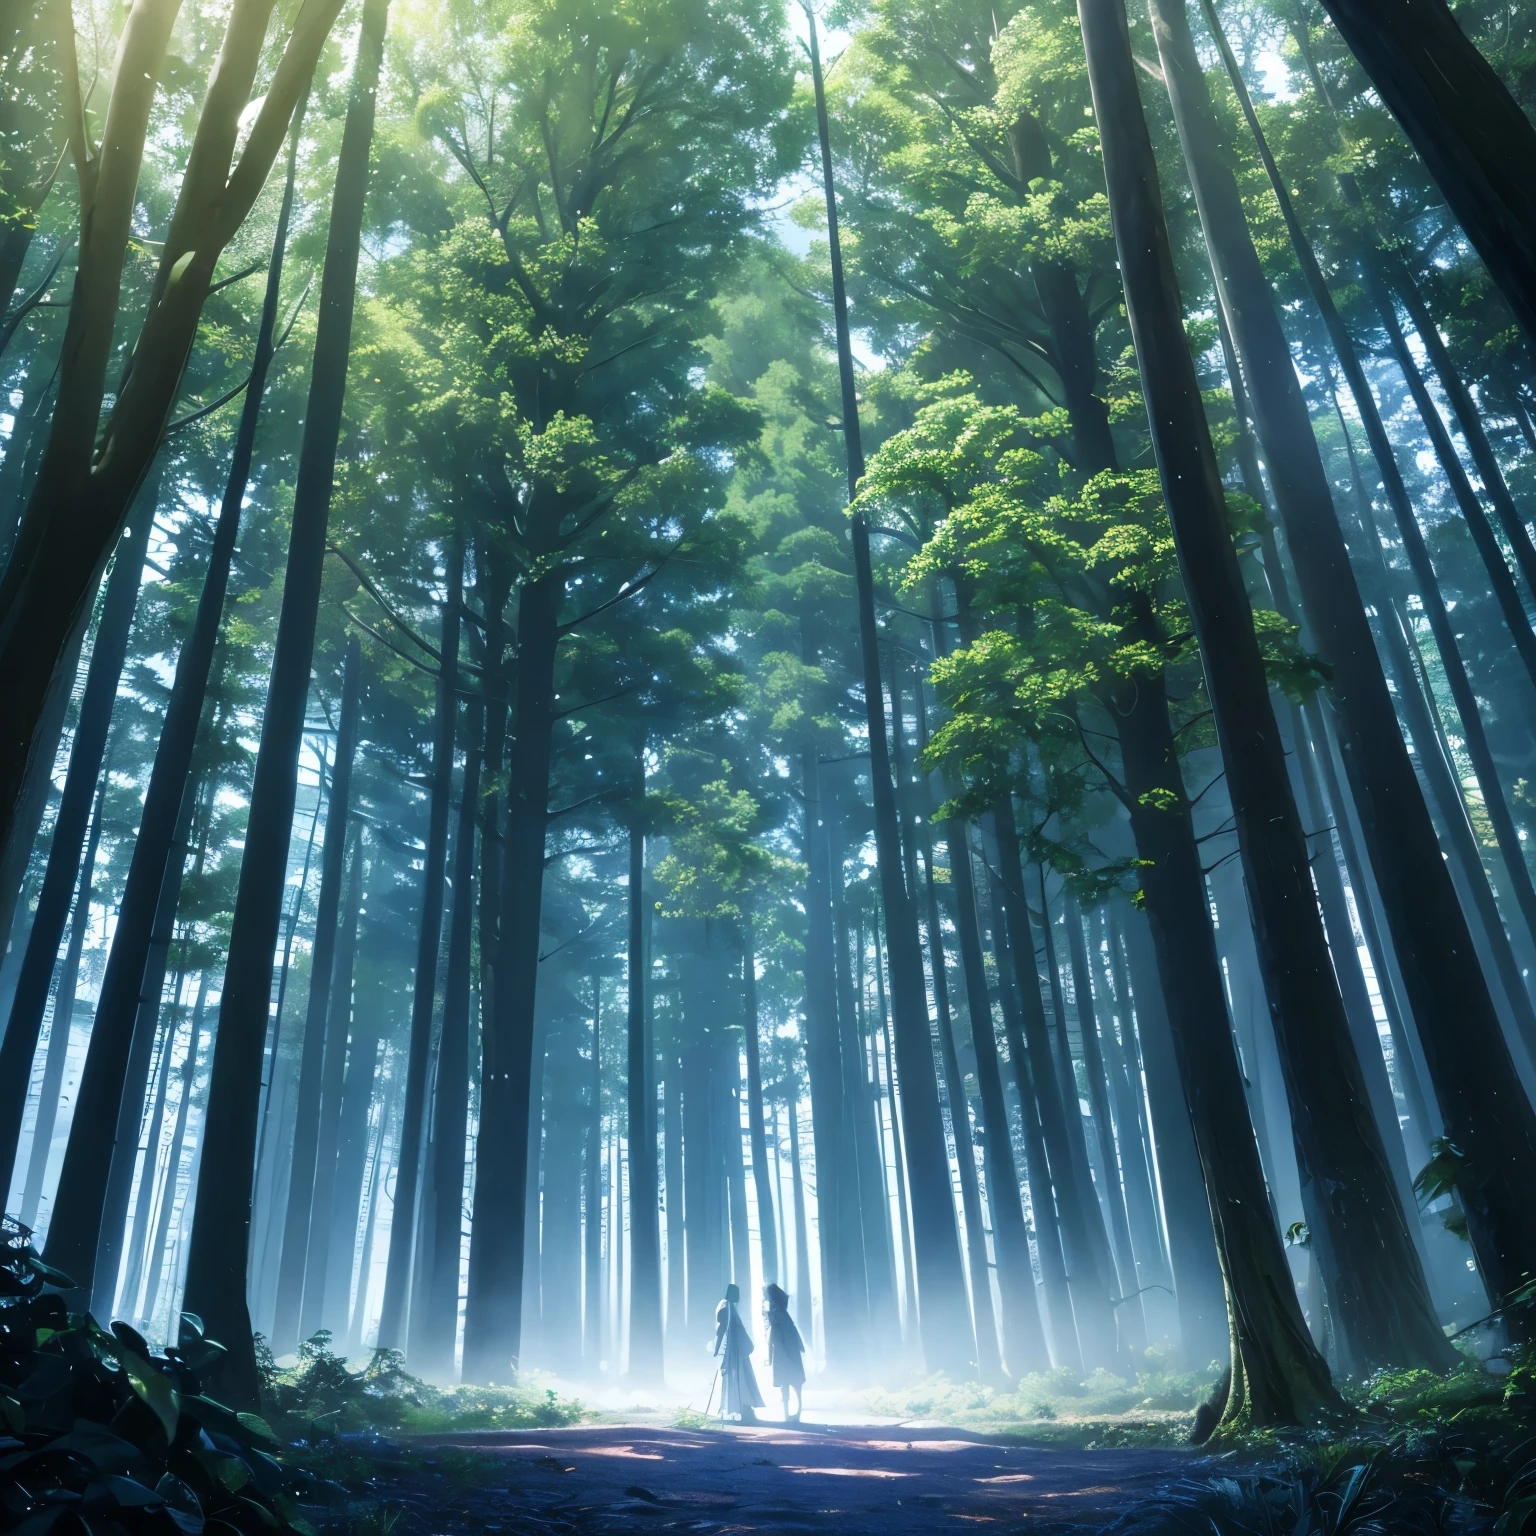 Un bosque místico con árboles gigantes y seres mágicos escondidos entre las ramas, 8k, alta calidad  